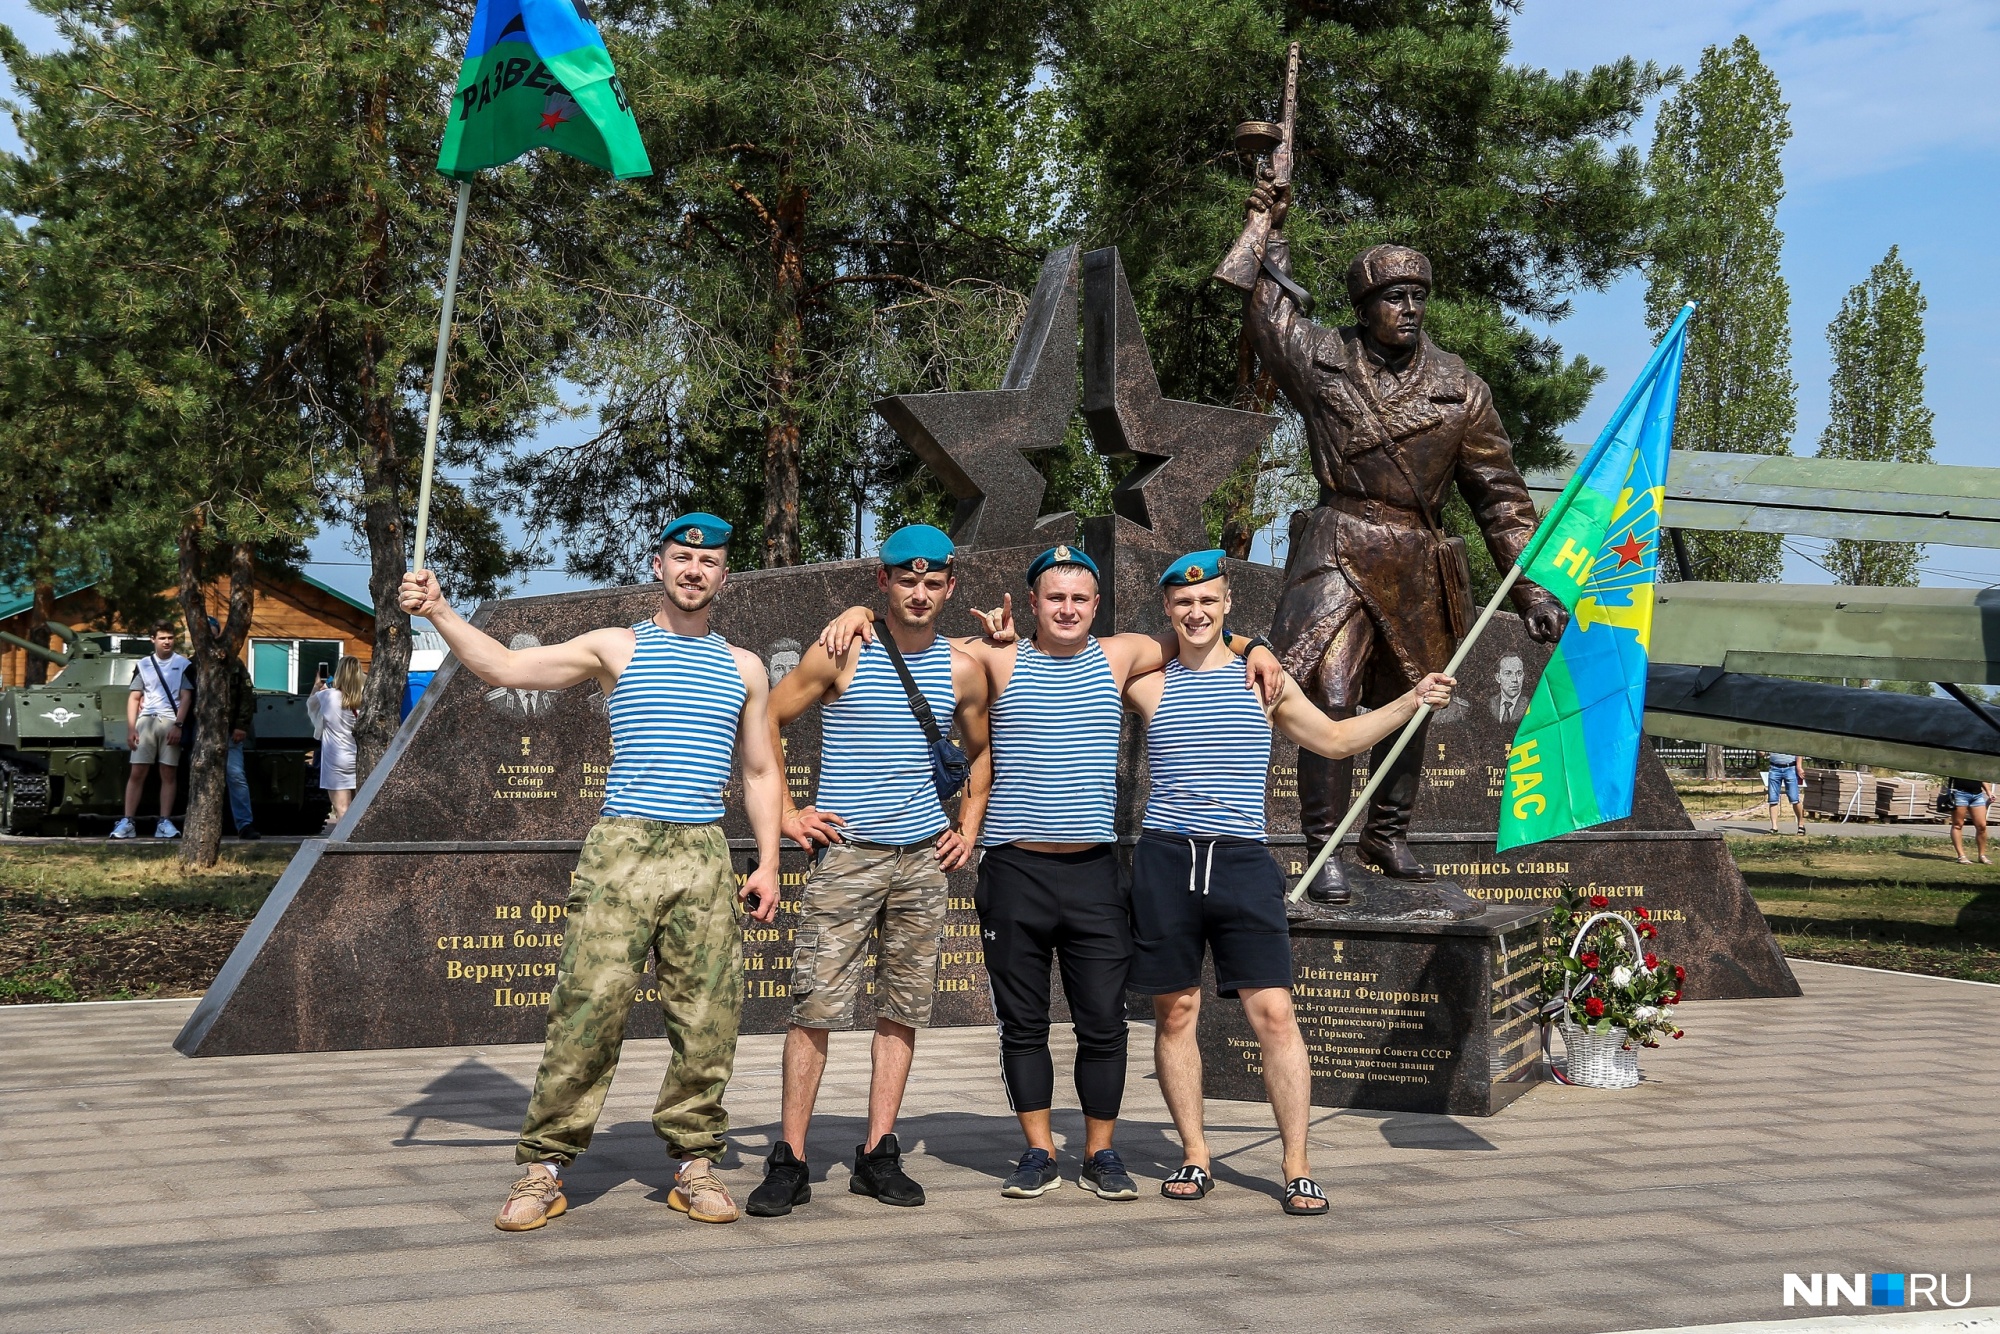 «Тихо, мирно, спокойно, культурно, подаем пример»: в Нижнем Новгороде отмечают День ВДВ